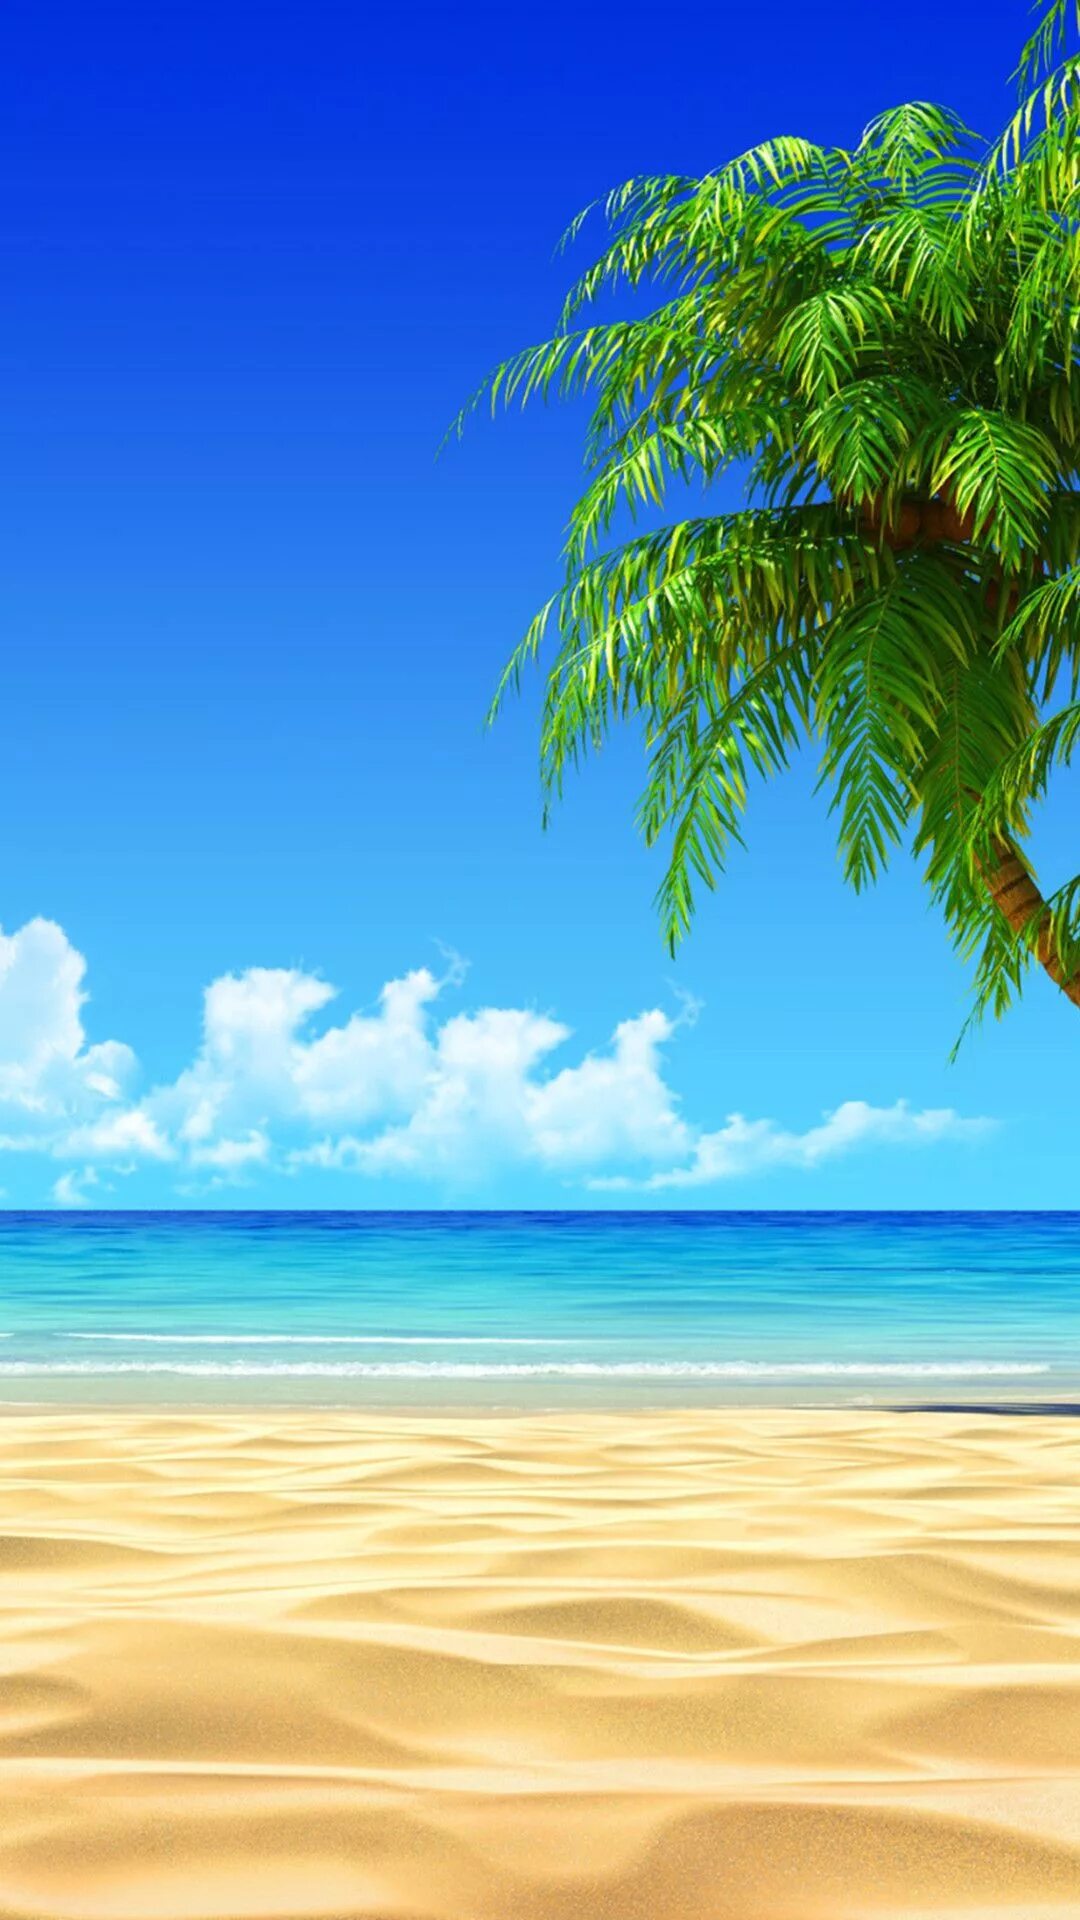 Красивые обои на андроид вертикально. Пляж фон. Море пальмы. Пейзаж пляж. Летний пляж.